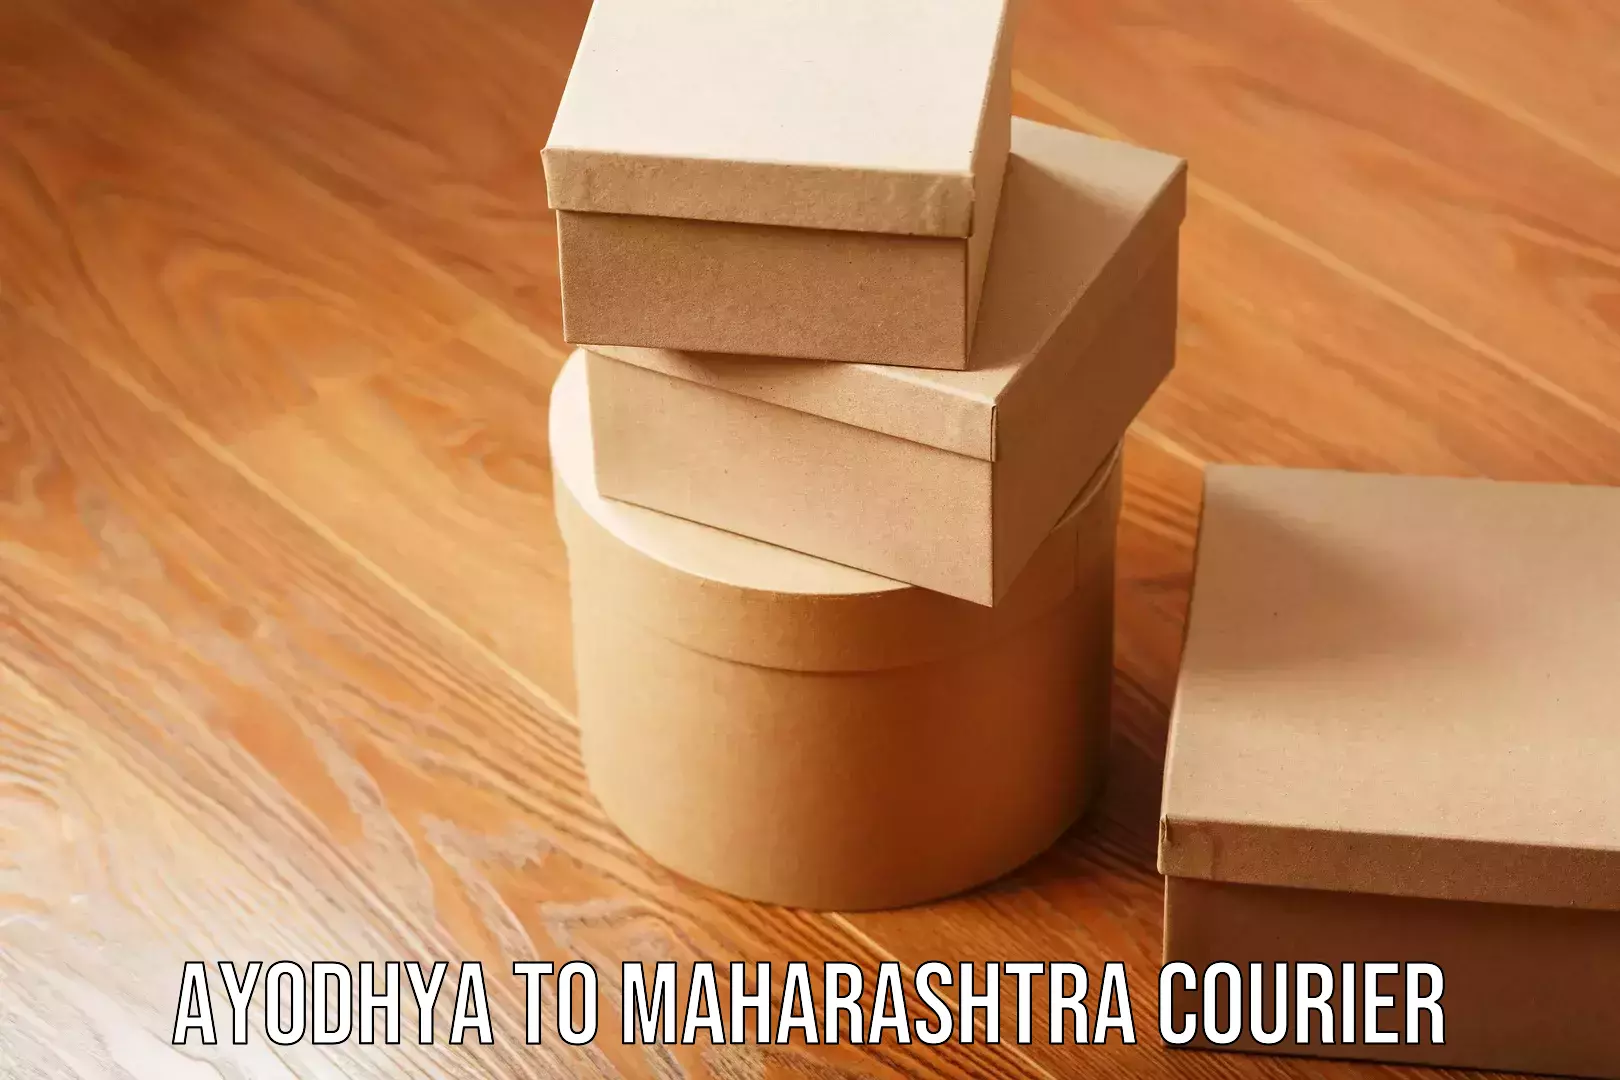 24/7 shipping services Ayodhya to Maharashtra